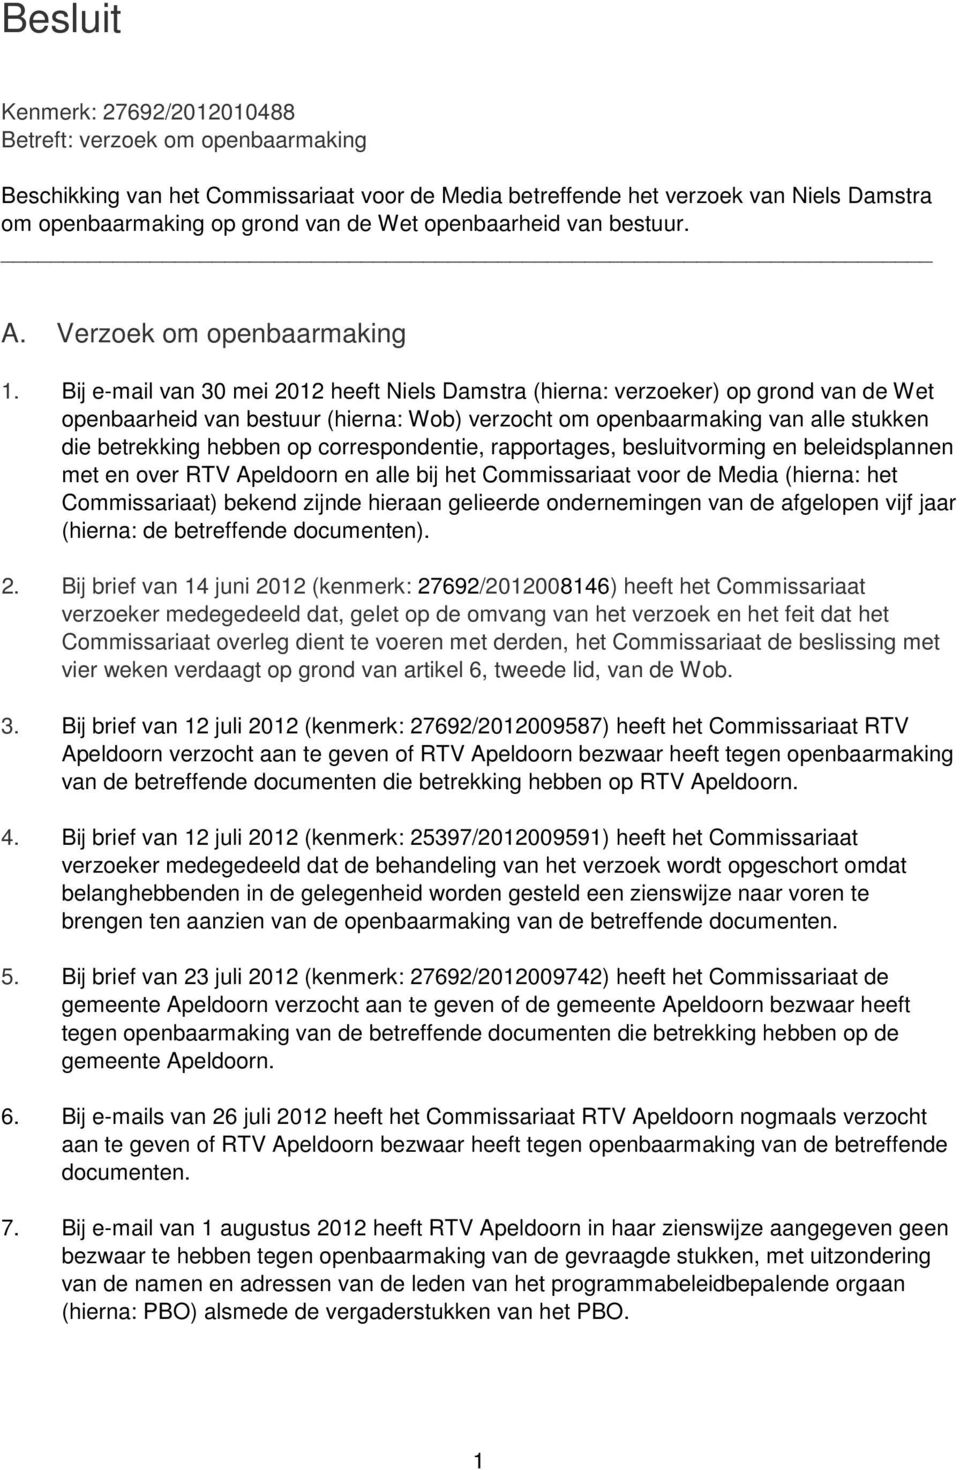 Bij e-mail van 30 mei 2012 heeft Niels Damstra (hierna: verzoeker) op grond van de Wet openbaarheid van bestuur (hierna: Wob) verzocht om openbaarmaking van alle stukken die betrekking hebben op